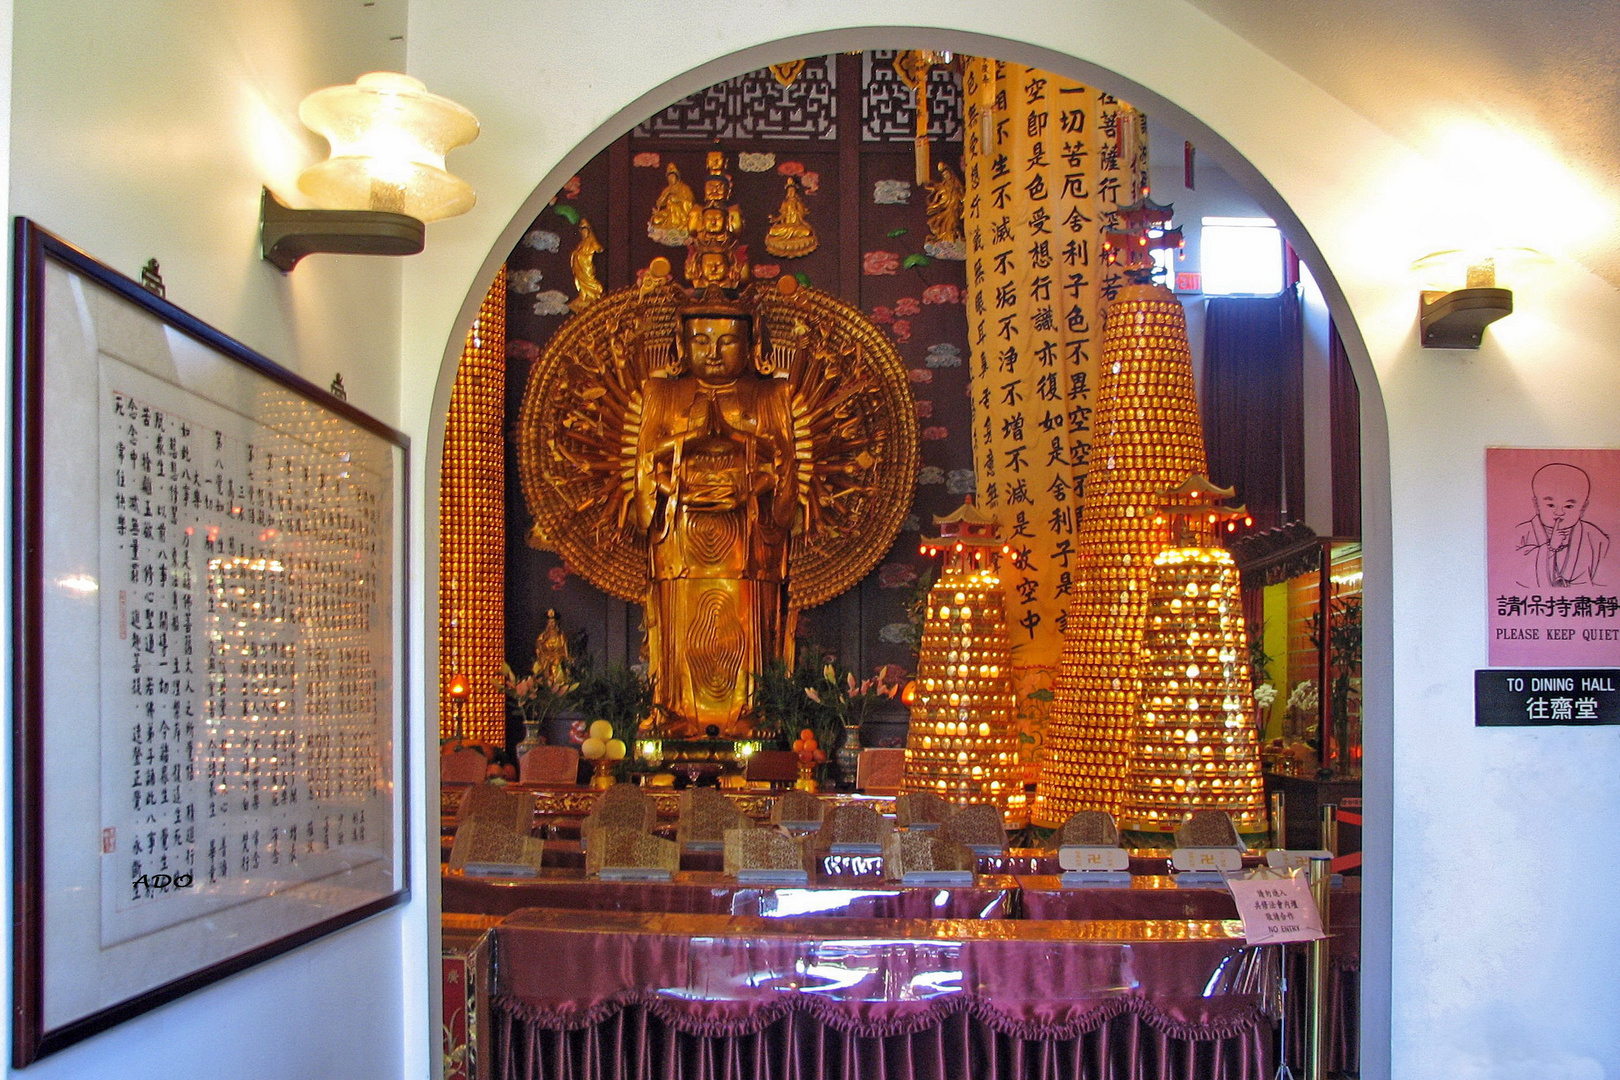 A Prayer Hall